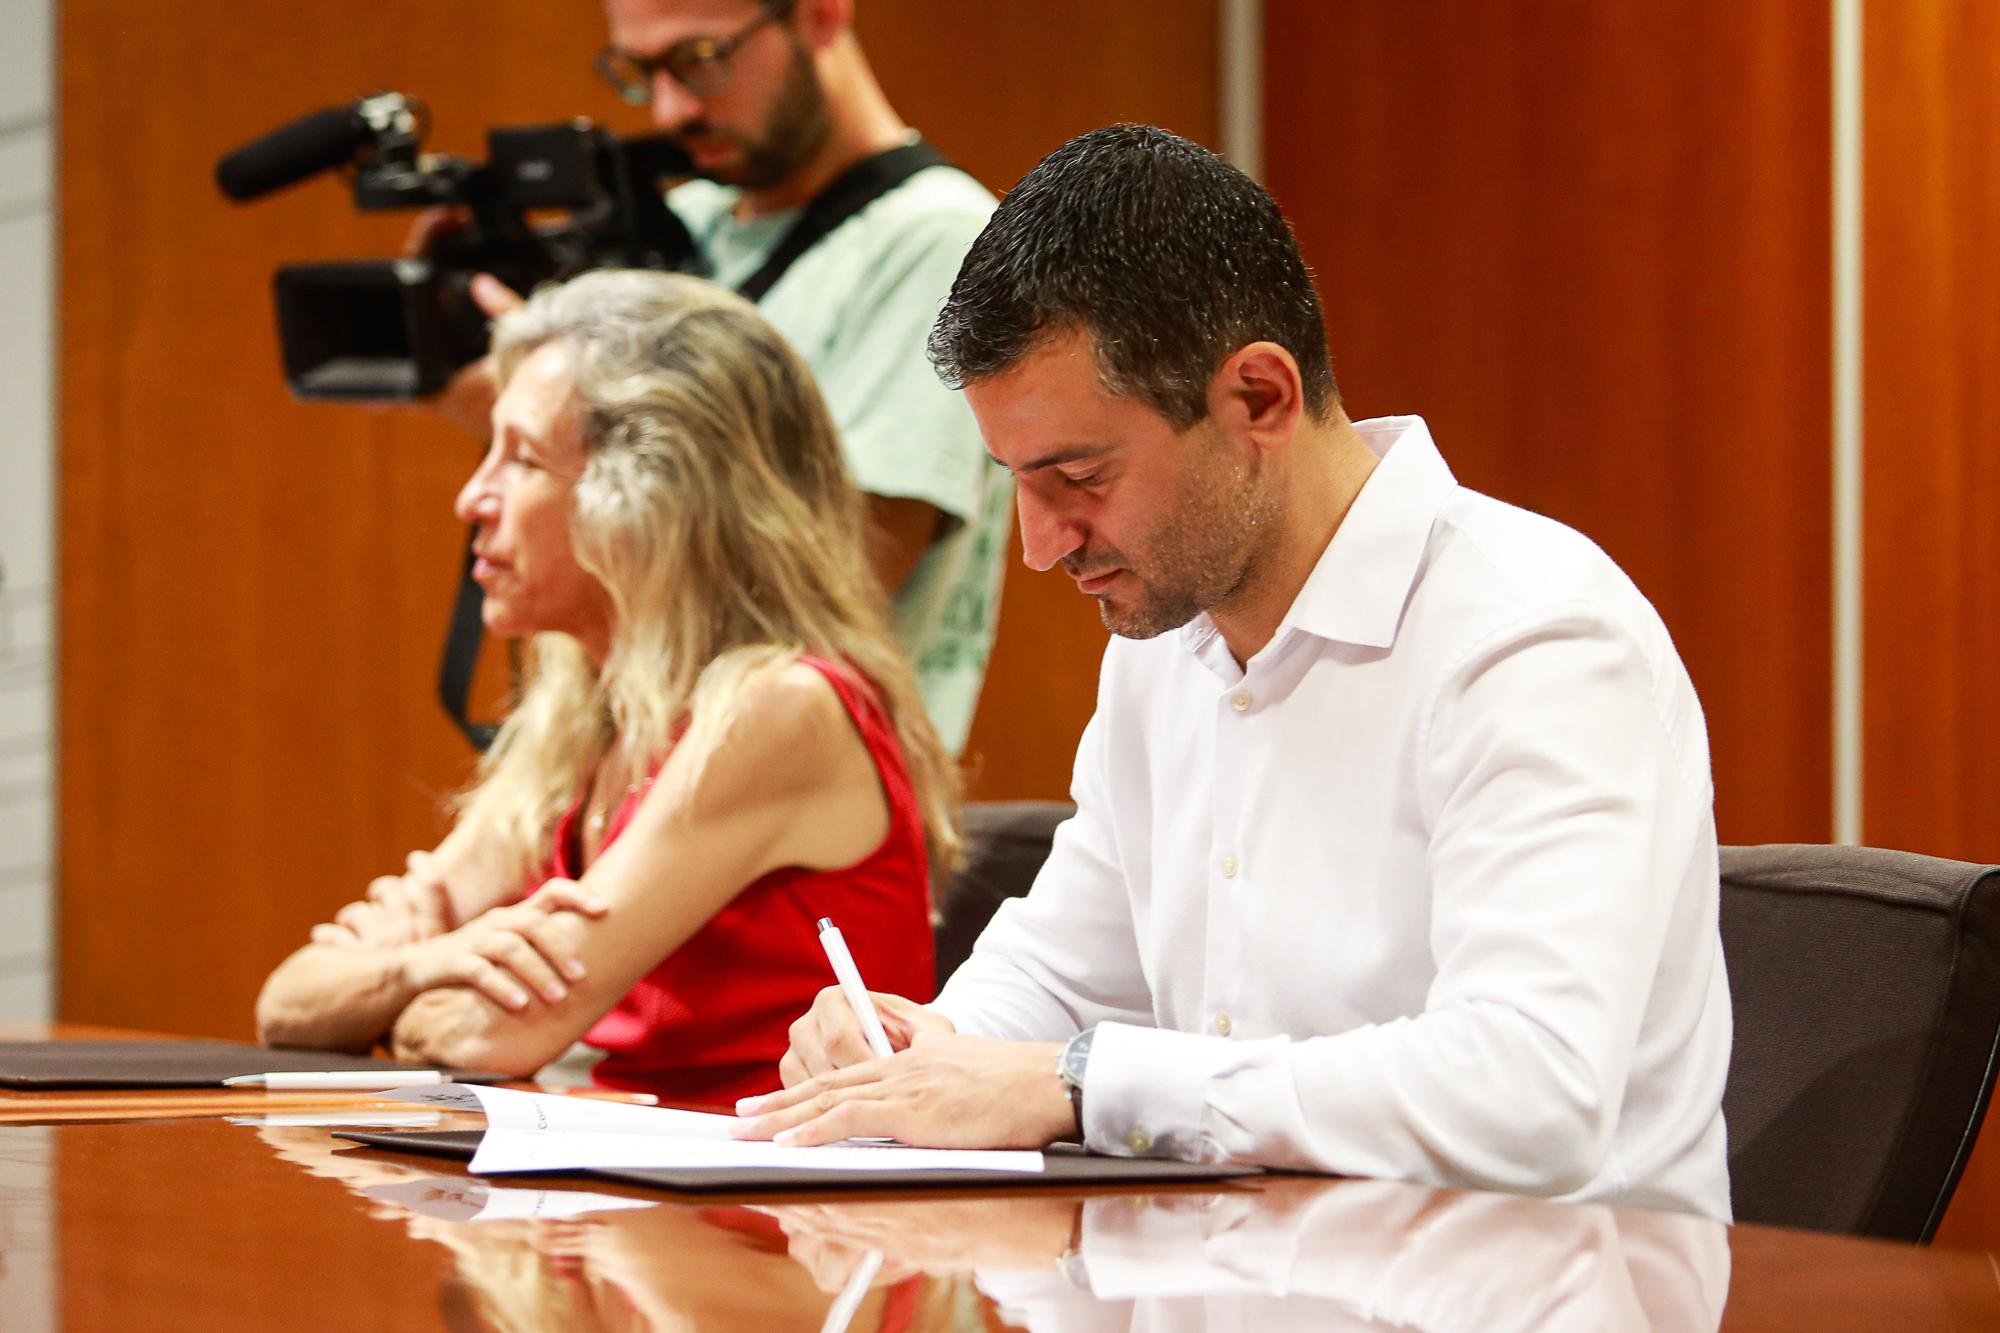 Galería de imágenes. El Consell de Eivissa quiere consensuar el futuro del vertedero de Ca na Putxa